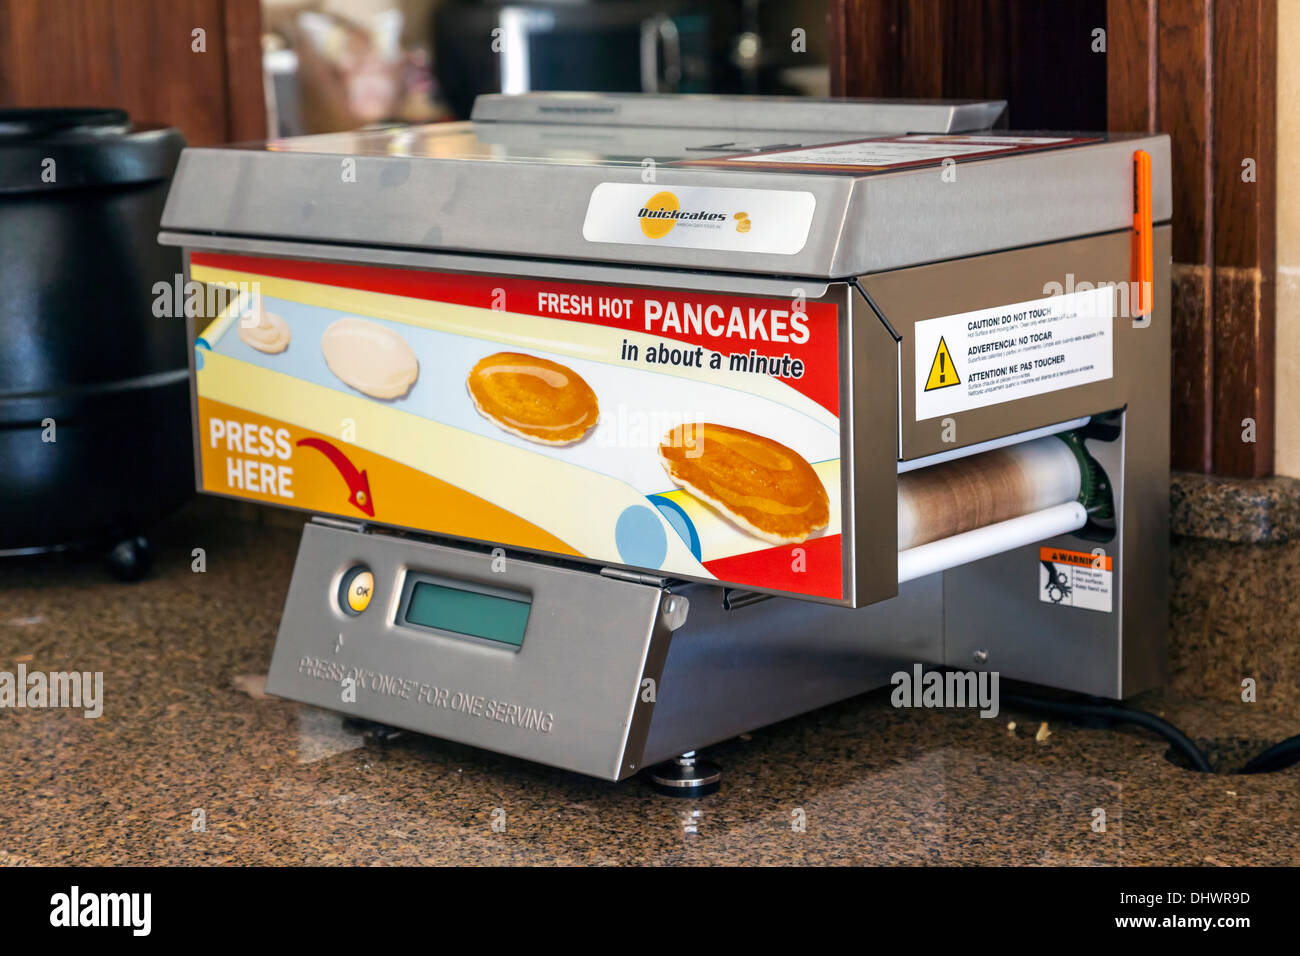 Pancake maker immagini e fotografie stock ad alta risoluzione - Alamy